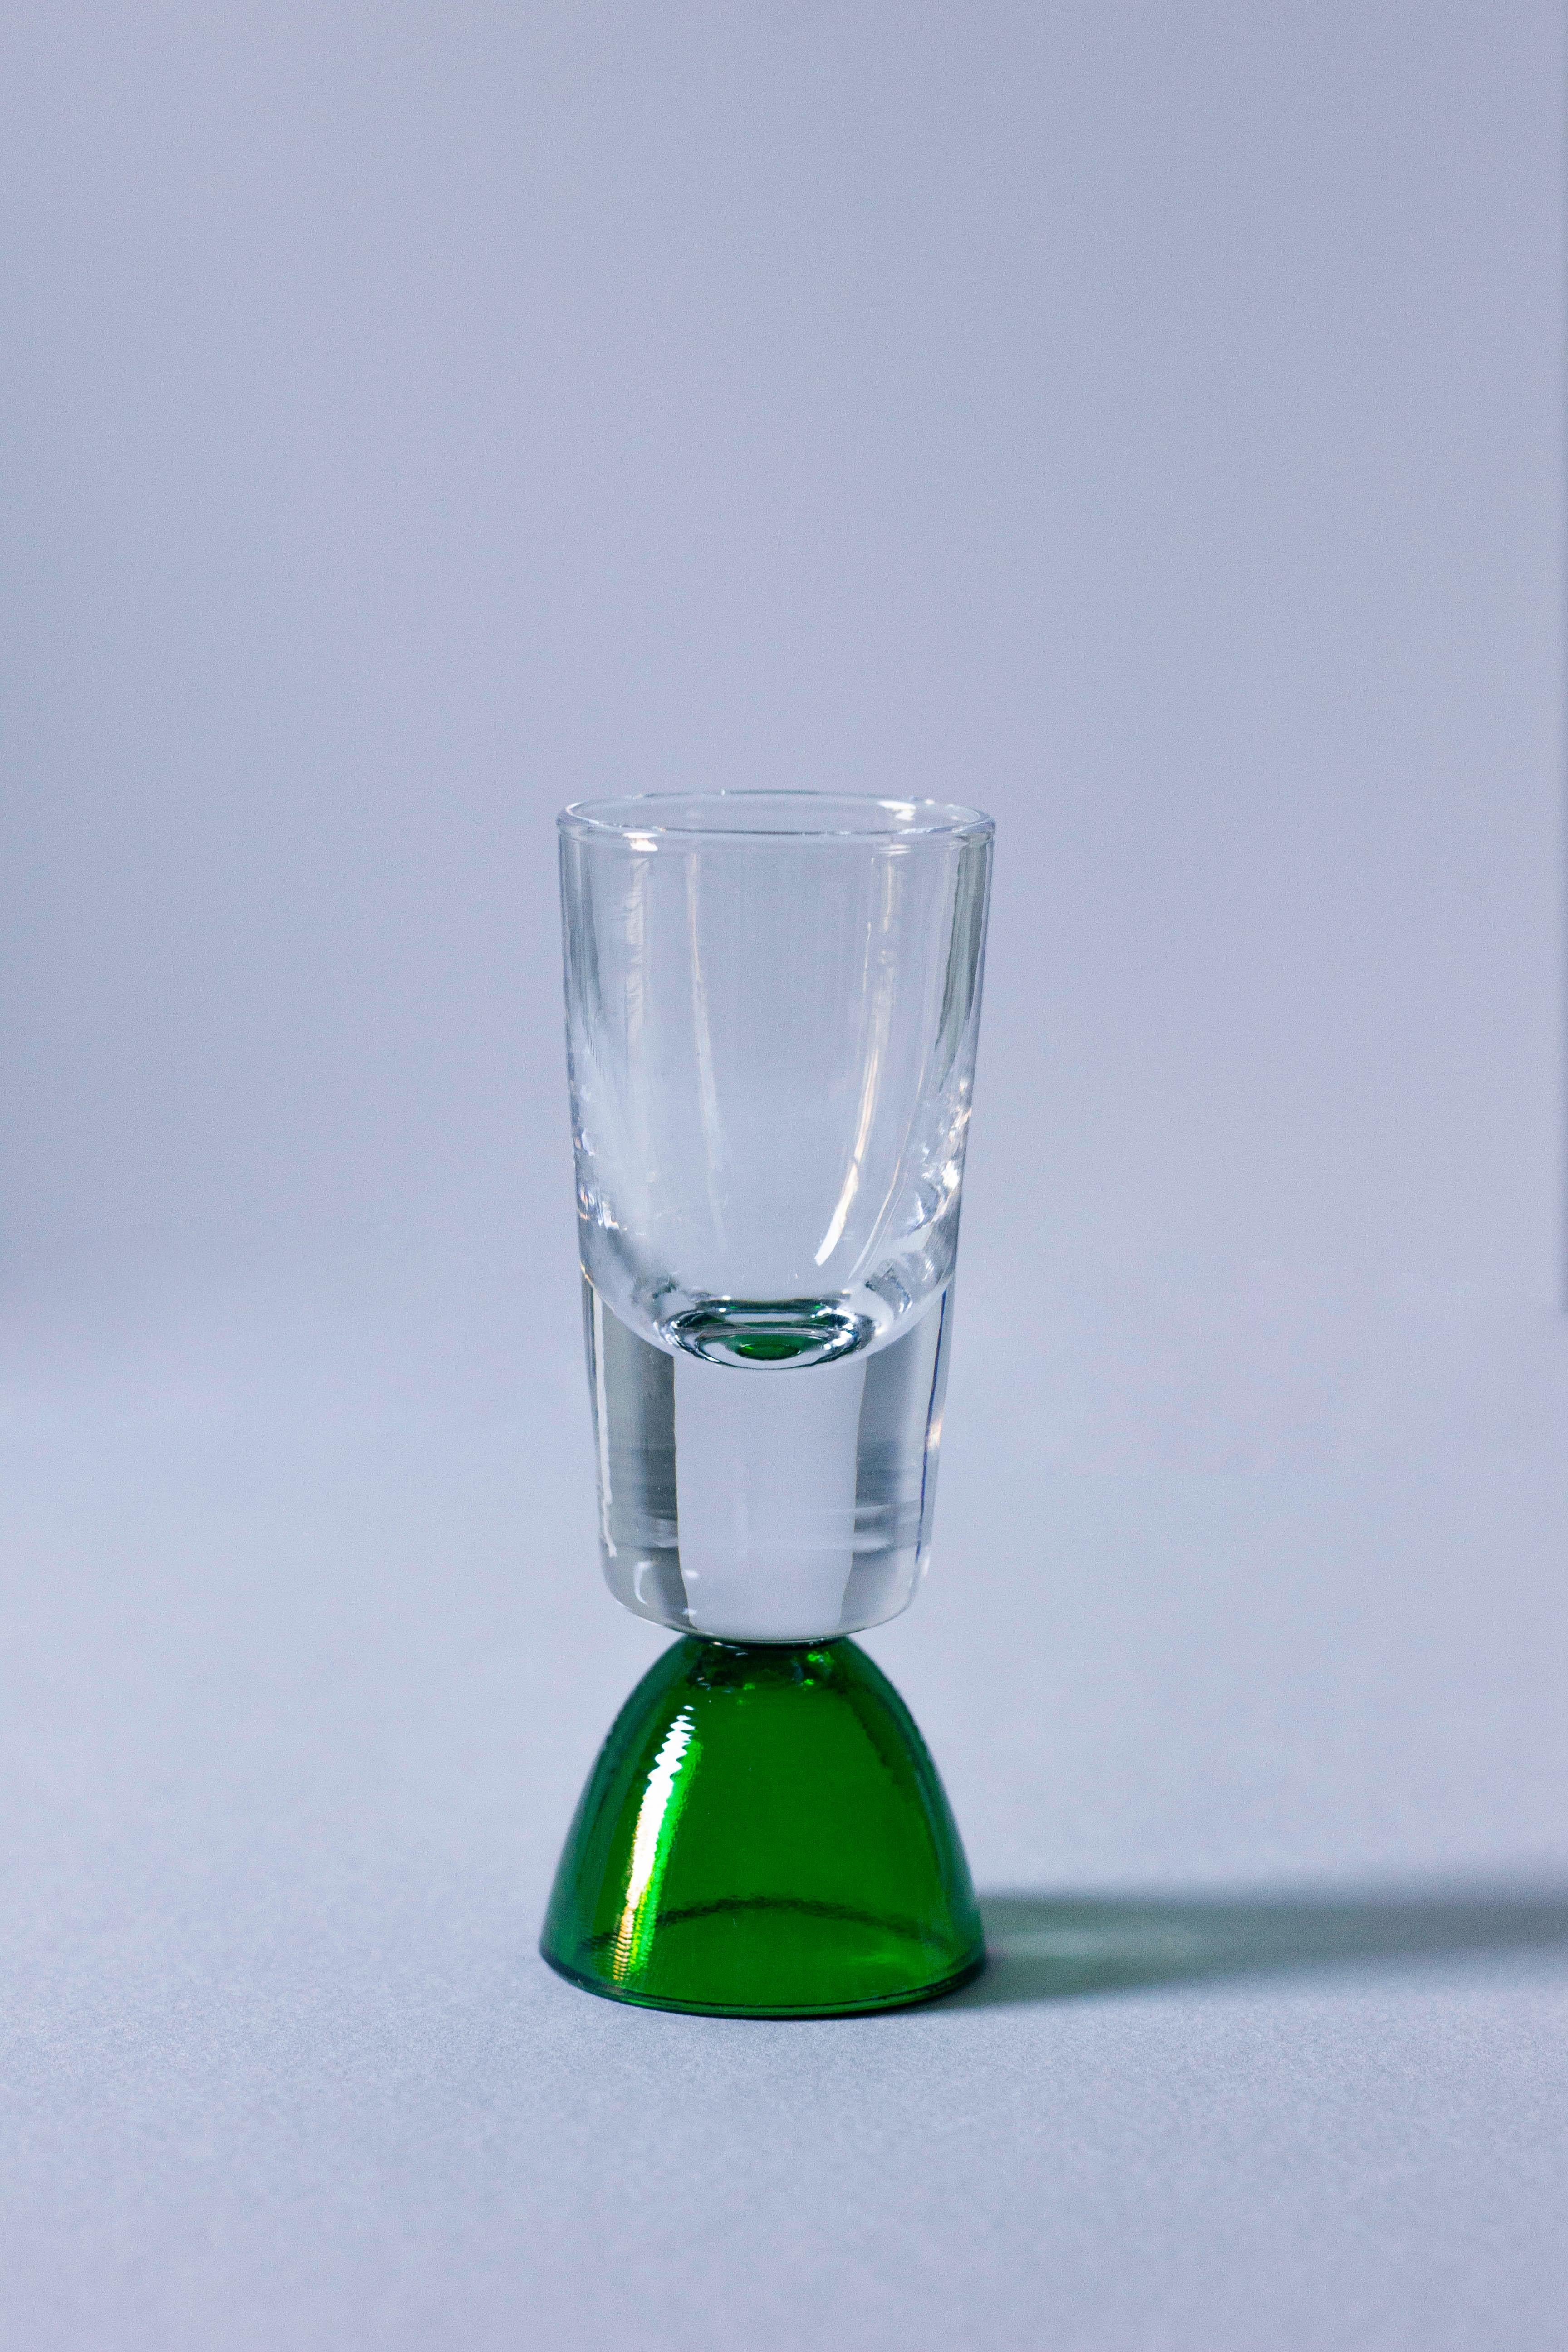 Genießen Sie einen Shot mit diesem Tequila-Glas, das in der Toskana von erfahrenen Handwerkern handgefertigt wurde. Dieses Glas aus der Wonder Crystals Collection eignet sich ideal für den Genuss von Tequila, Mezcal oder anderen edlen Spirituosen.